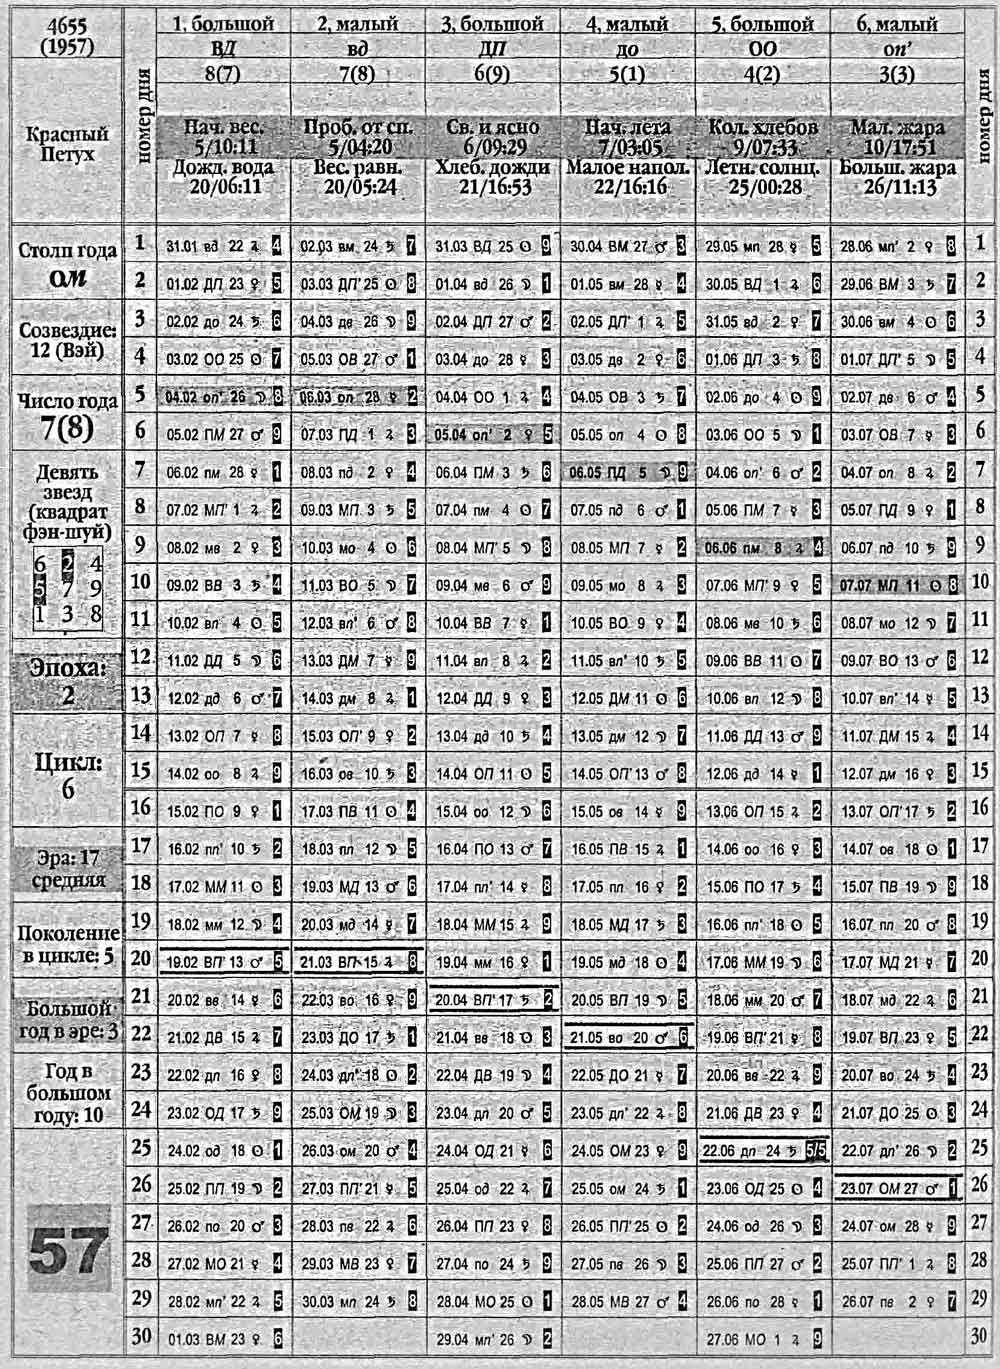 Китайский календарь 1957 года